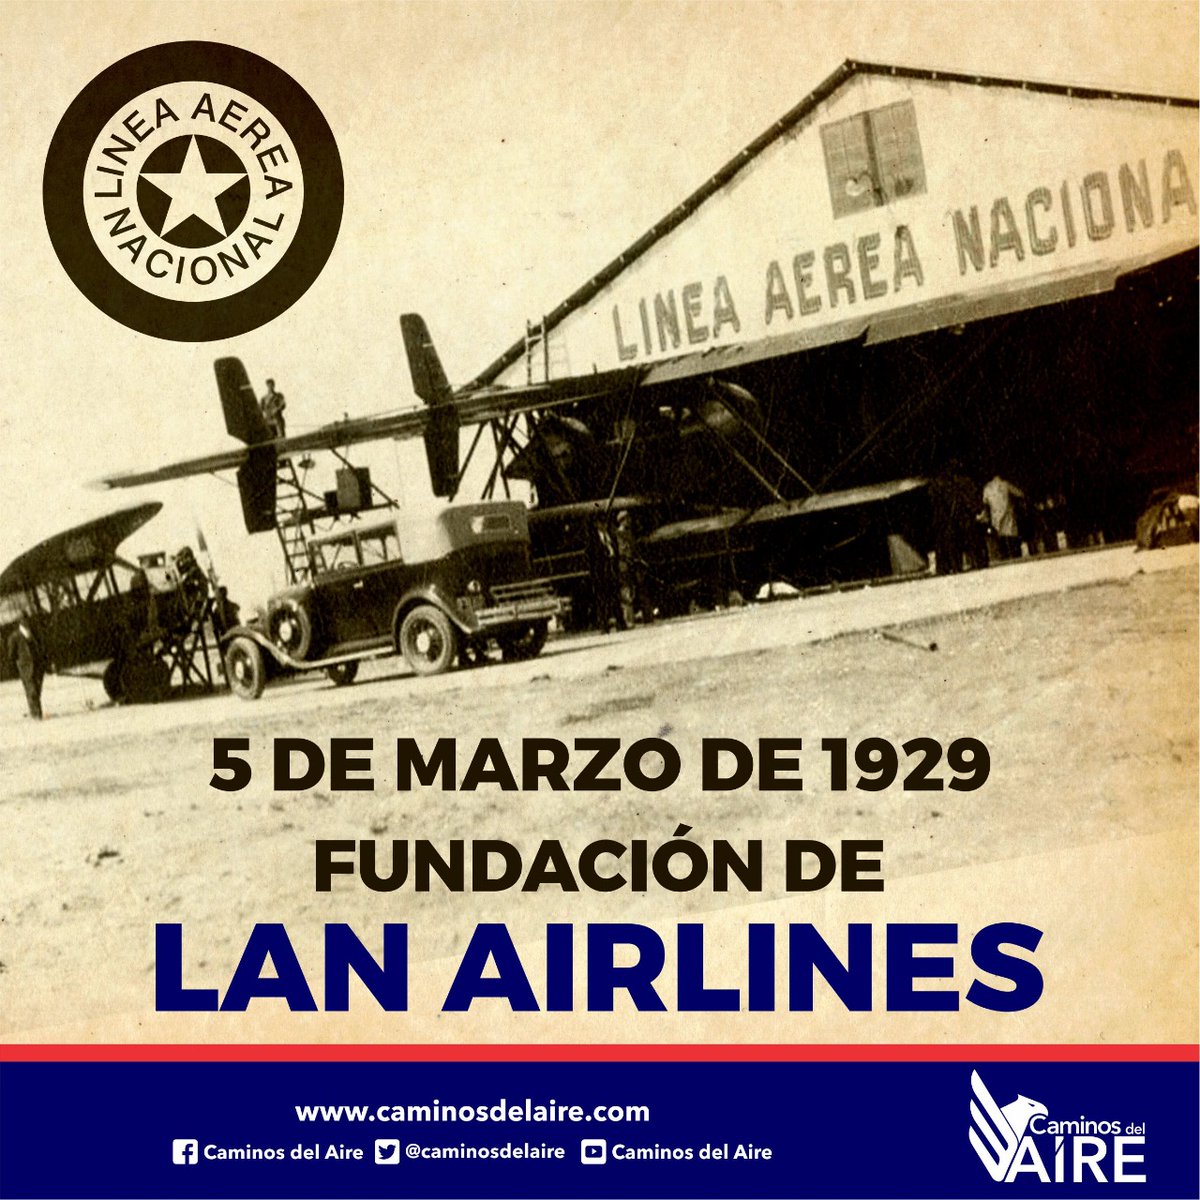 Un día como hoy, 5 de marzo pero de 1929, fue fundada la Línea Aérea Nacional (LAN), en 2005 cambiaría su nombre a LAN Airlines.

#CaminosdelAire #Noticias #Aviación #LíneaAéreaNacional #LAN #LANAirlines #UnDíaComoHoy #HoyenlaHistoria #Efeméride